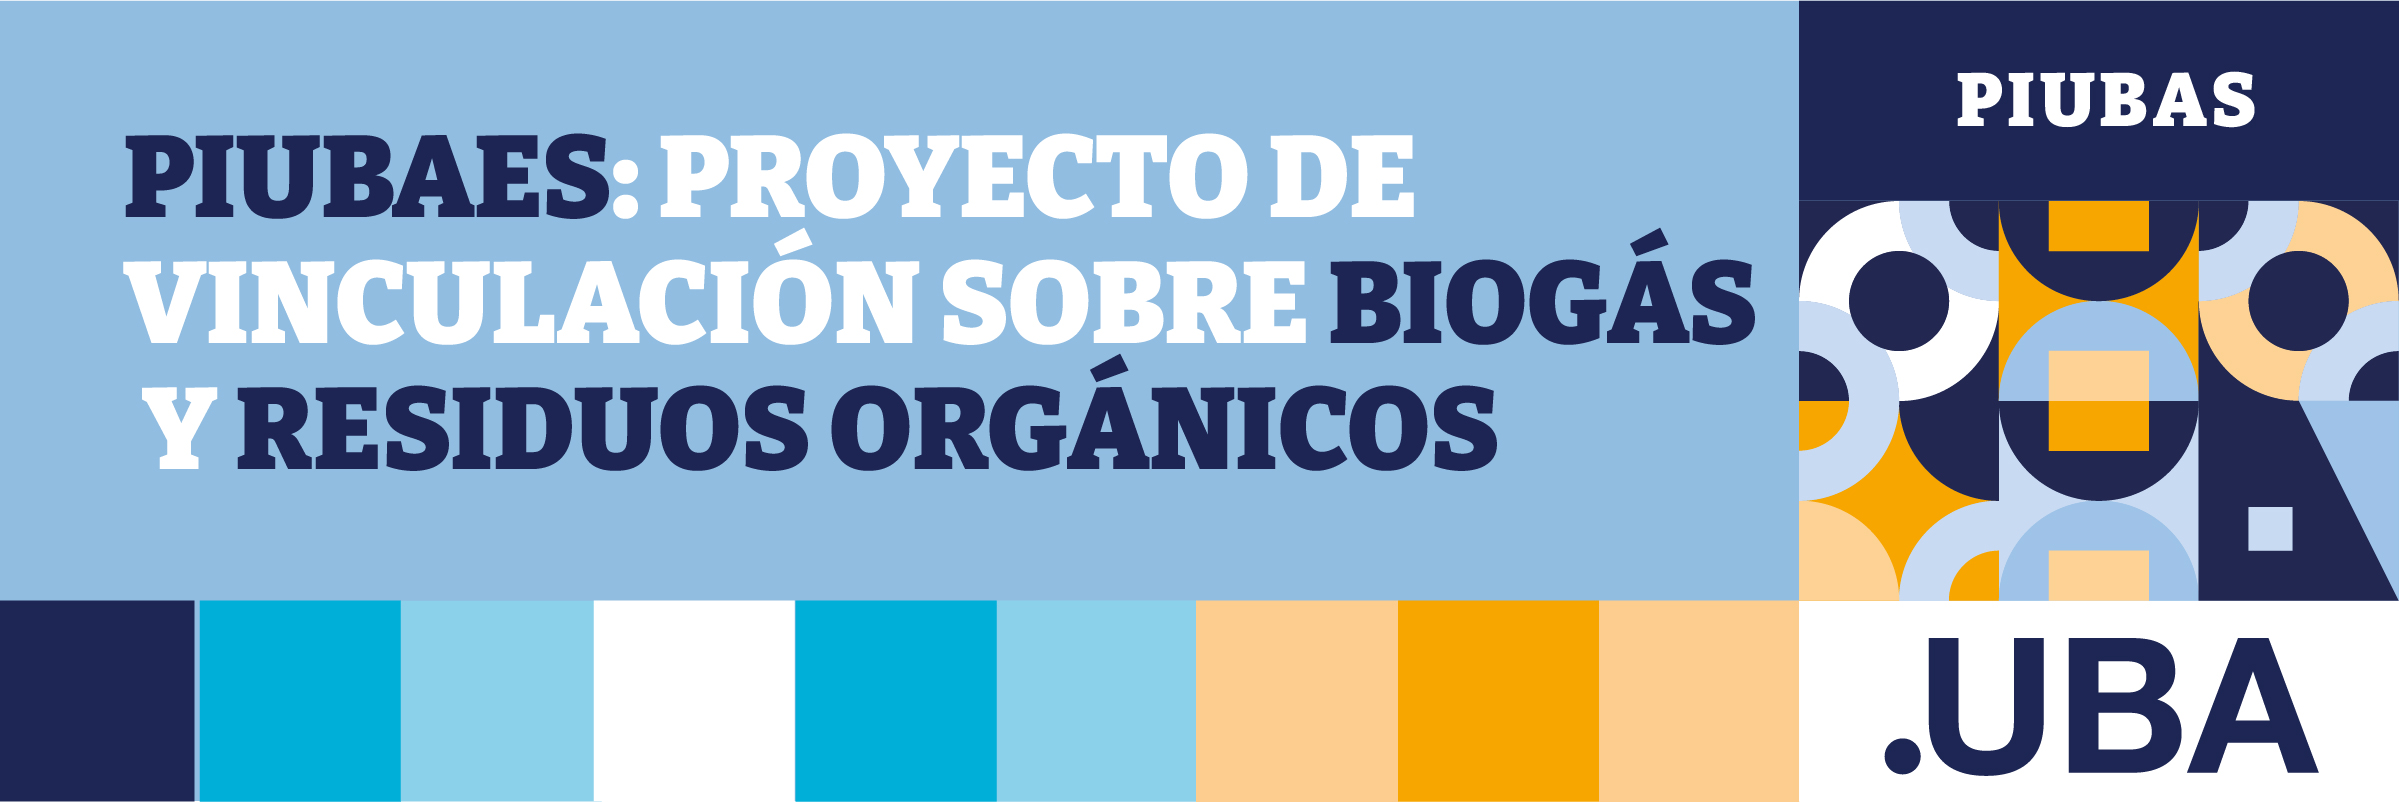 PIUBAES: Proyecto de vinculación sobre biogás y residuos orgánico